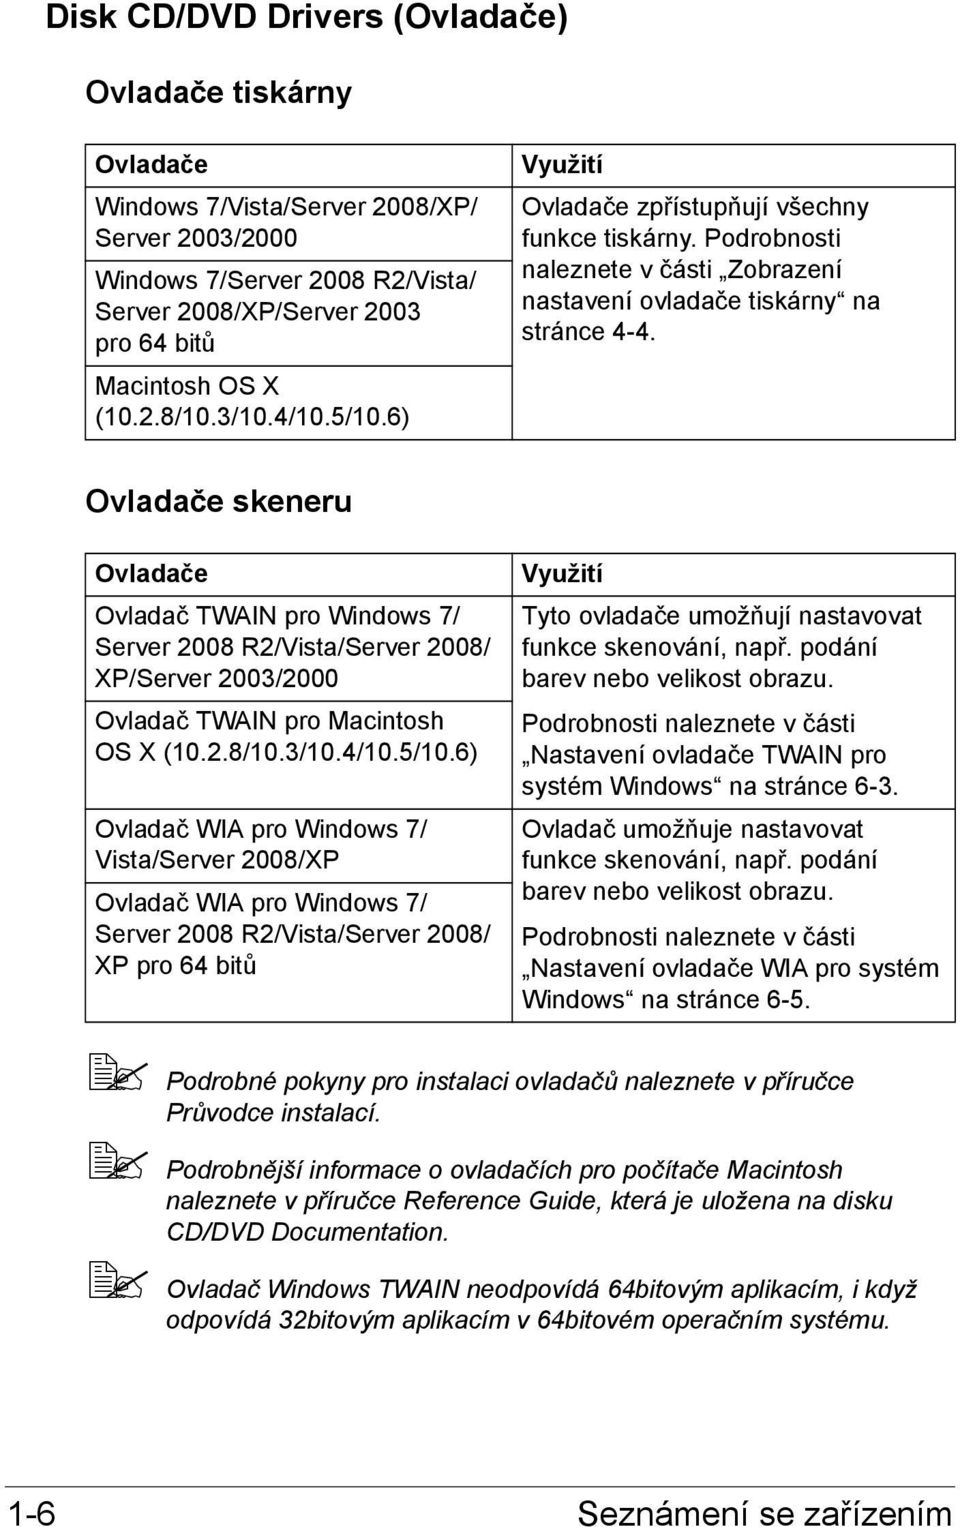 Ovladače skeneru Ovladače Ovladač TWAIN pro Windows 7/ Server 2008 R2/Vista/Server 2008/ XP/Server 2003/2000 Ovladač TWAIN pro Macintosh OS X (10.2.8/10.3/10.4/10.5/10.